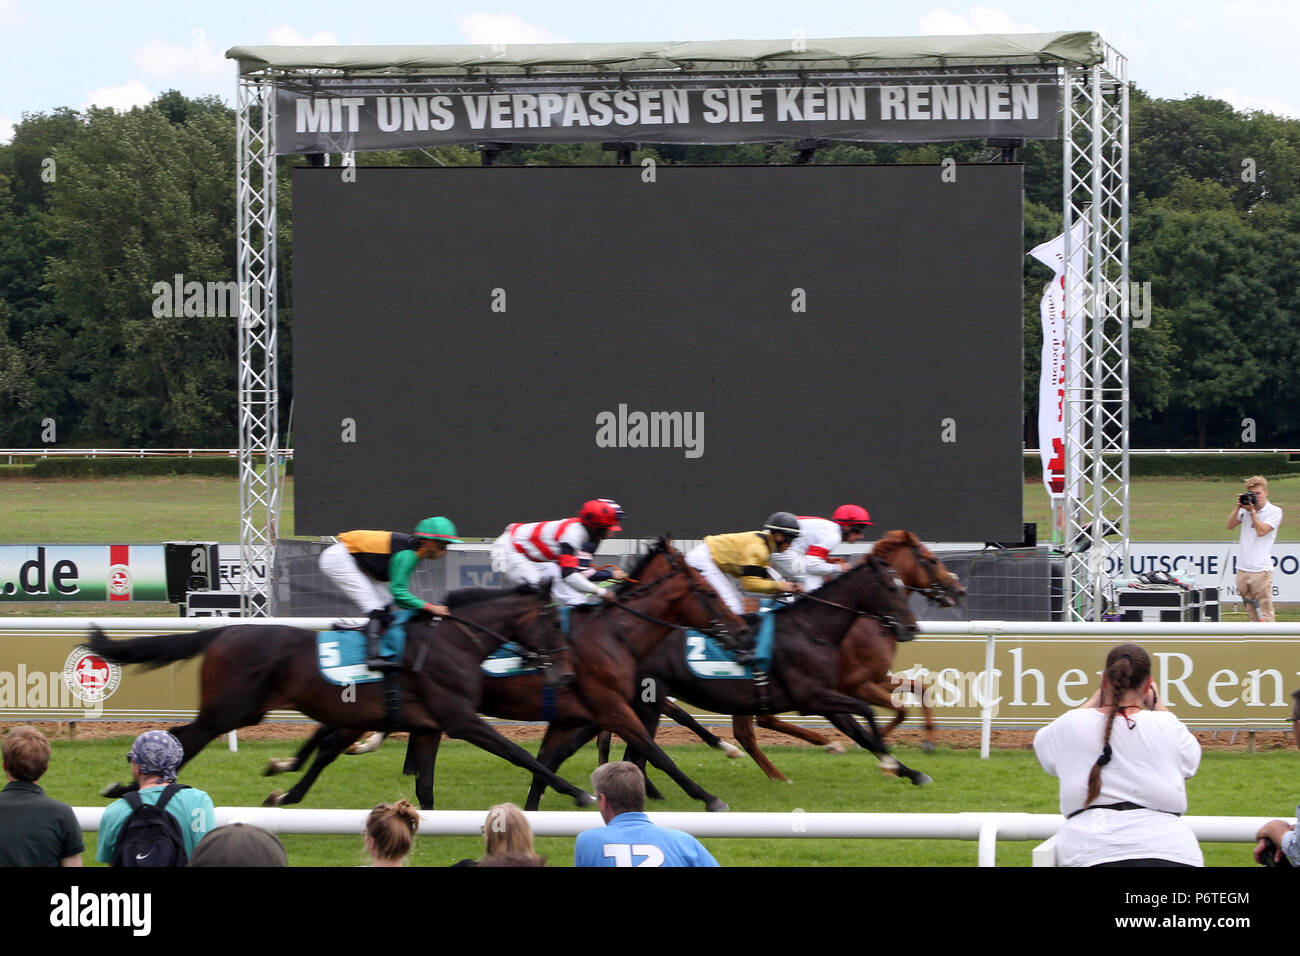 Hannover, schwarzer Bildschirm auf dem Bildschirm während einer galopp Rennen Stockfoto